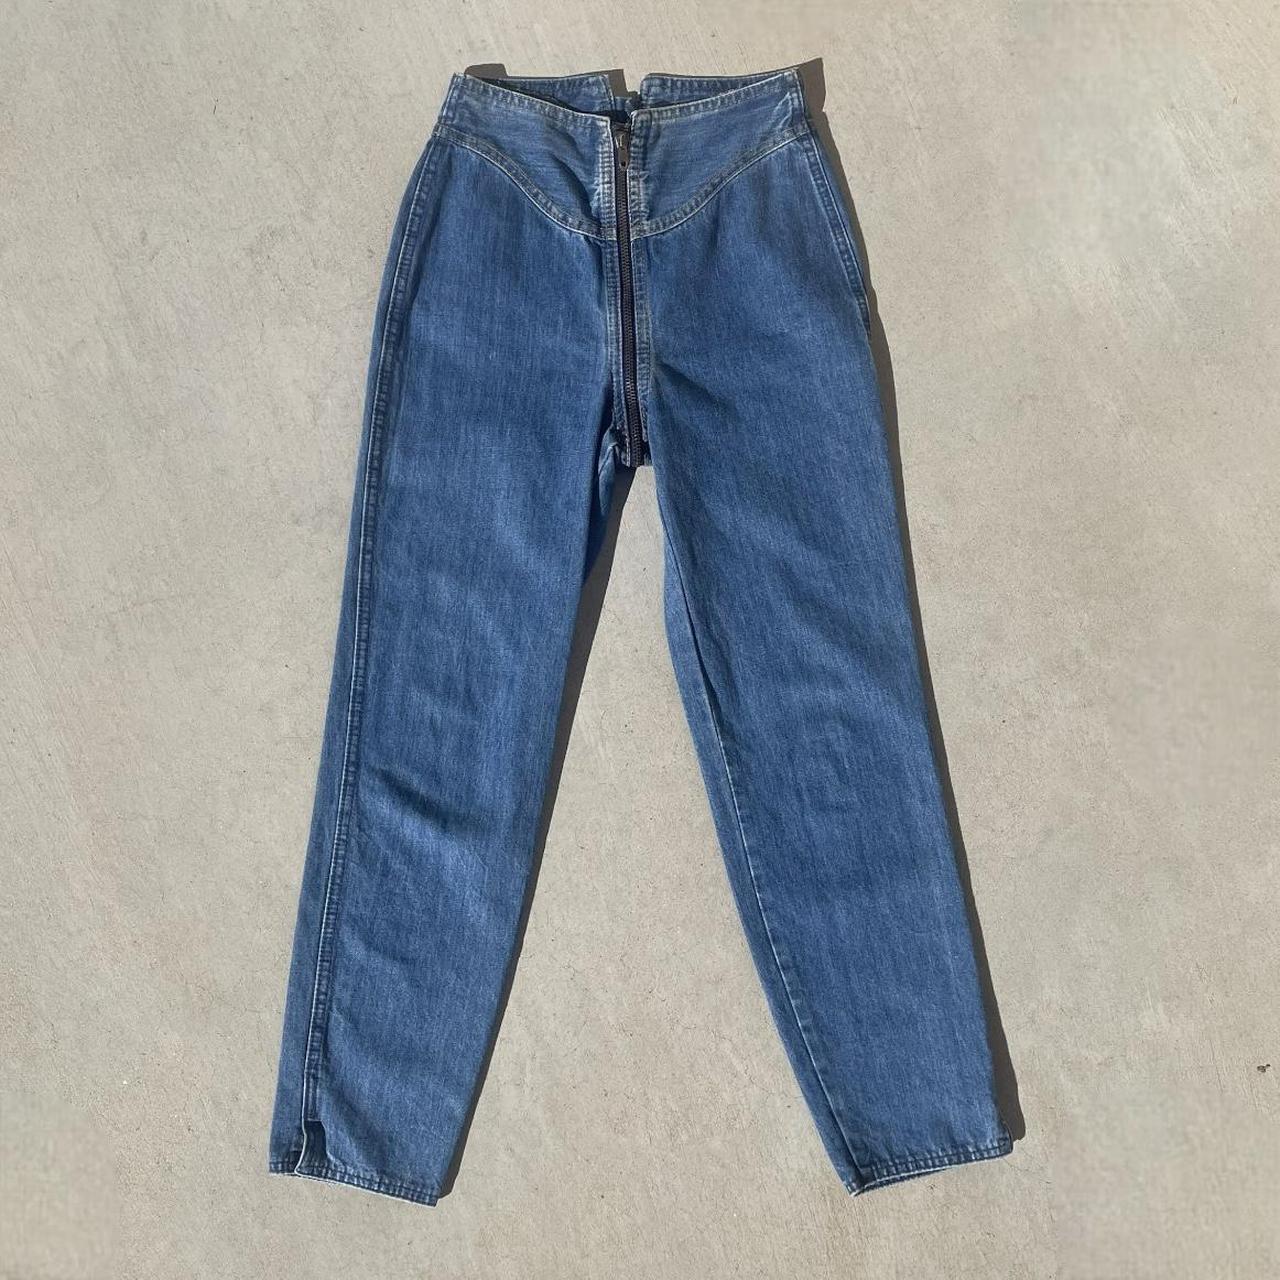 RARE RAG CITY BLUES Los Angeles 70s 80s jeans. Front... - Depop